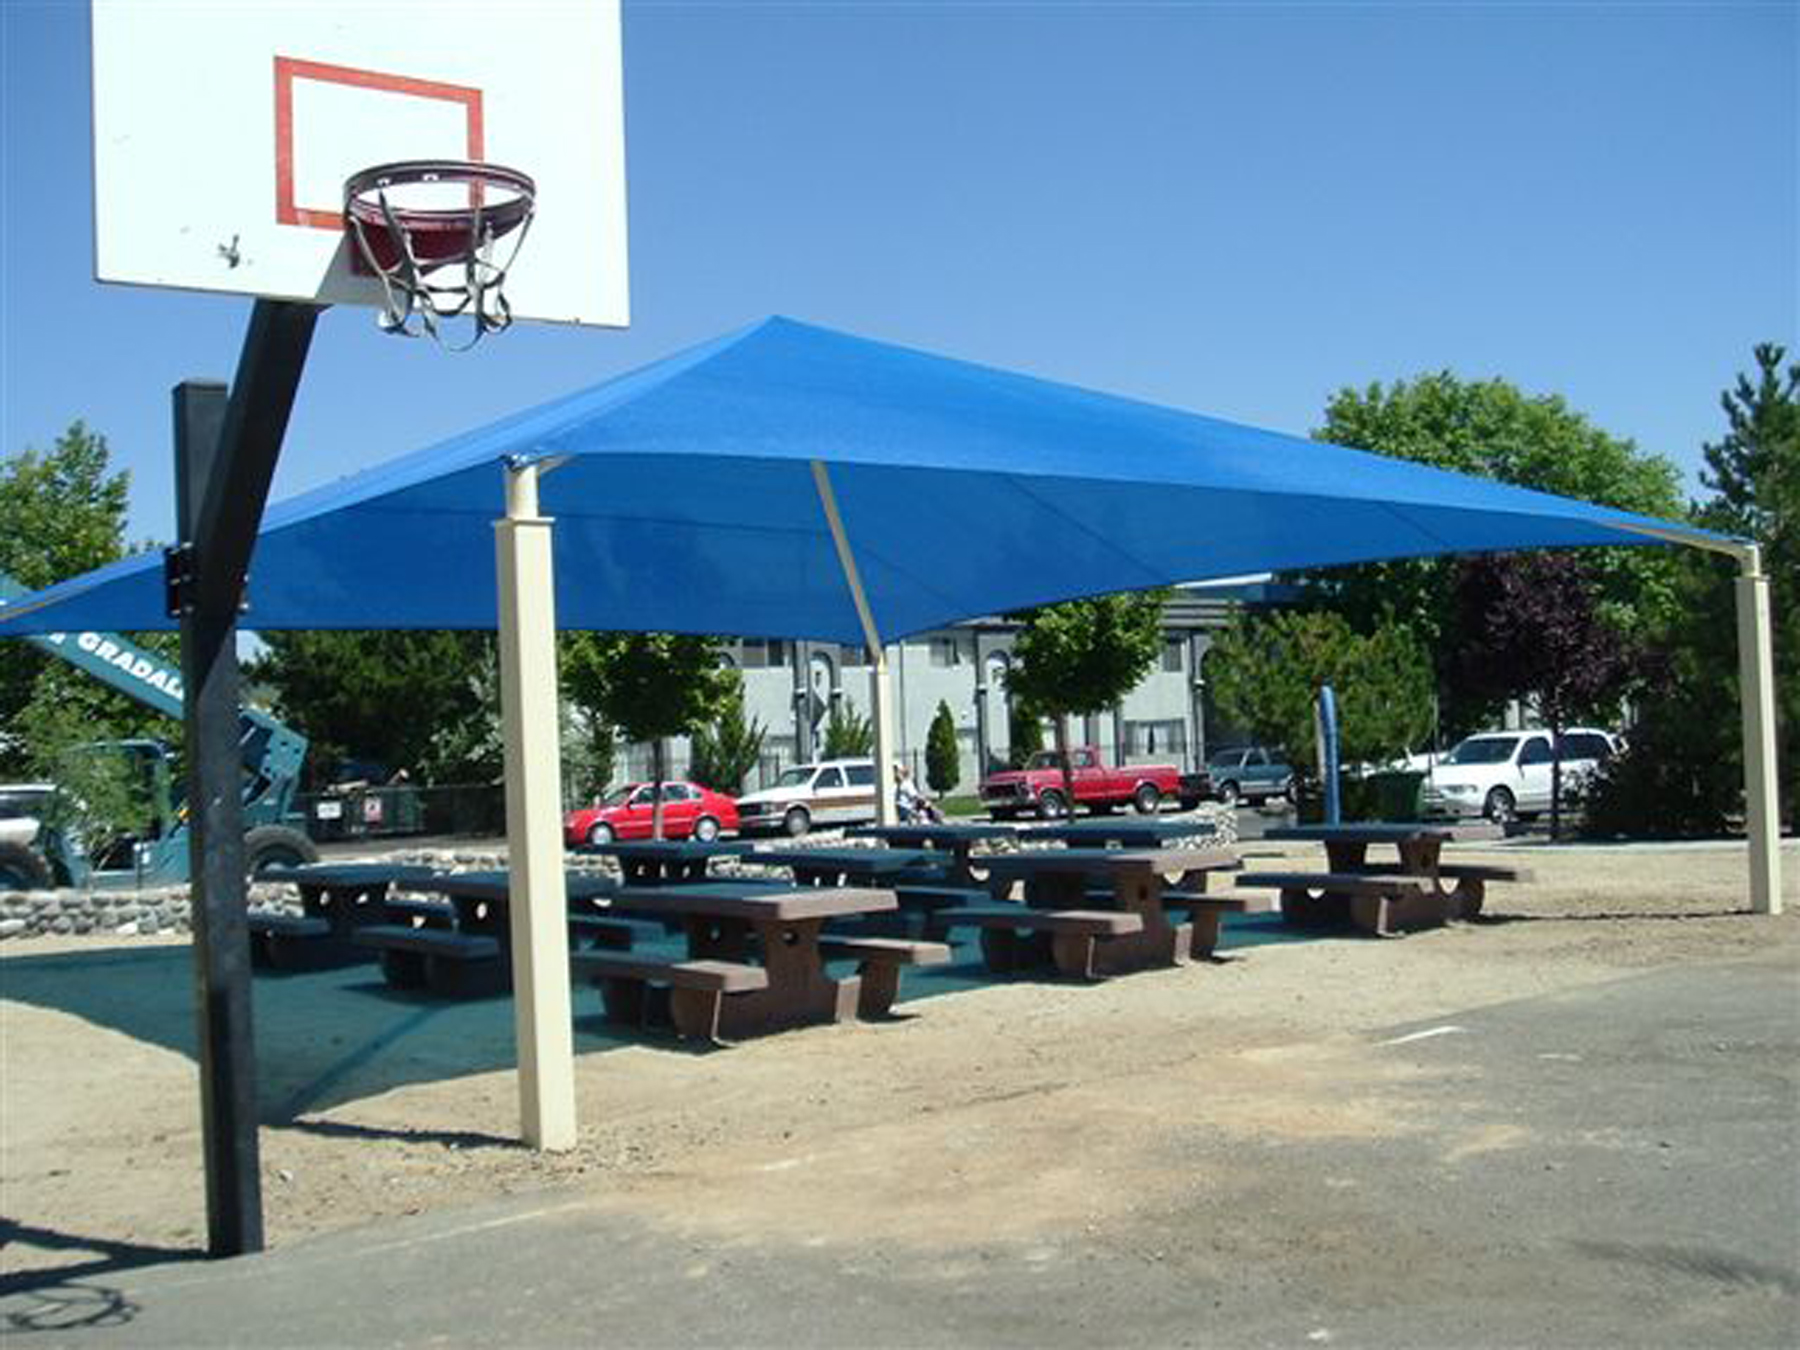 park picnic tables underneath blue sun shade